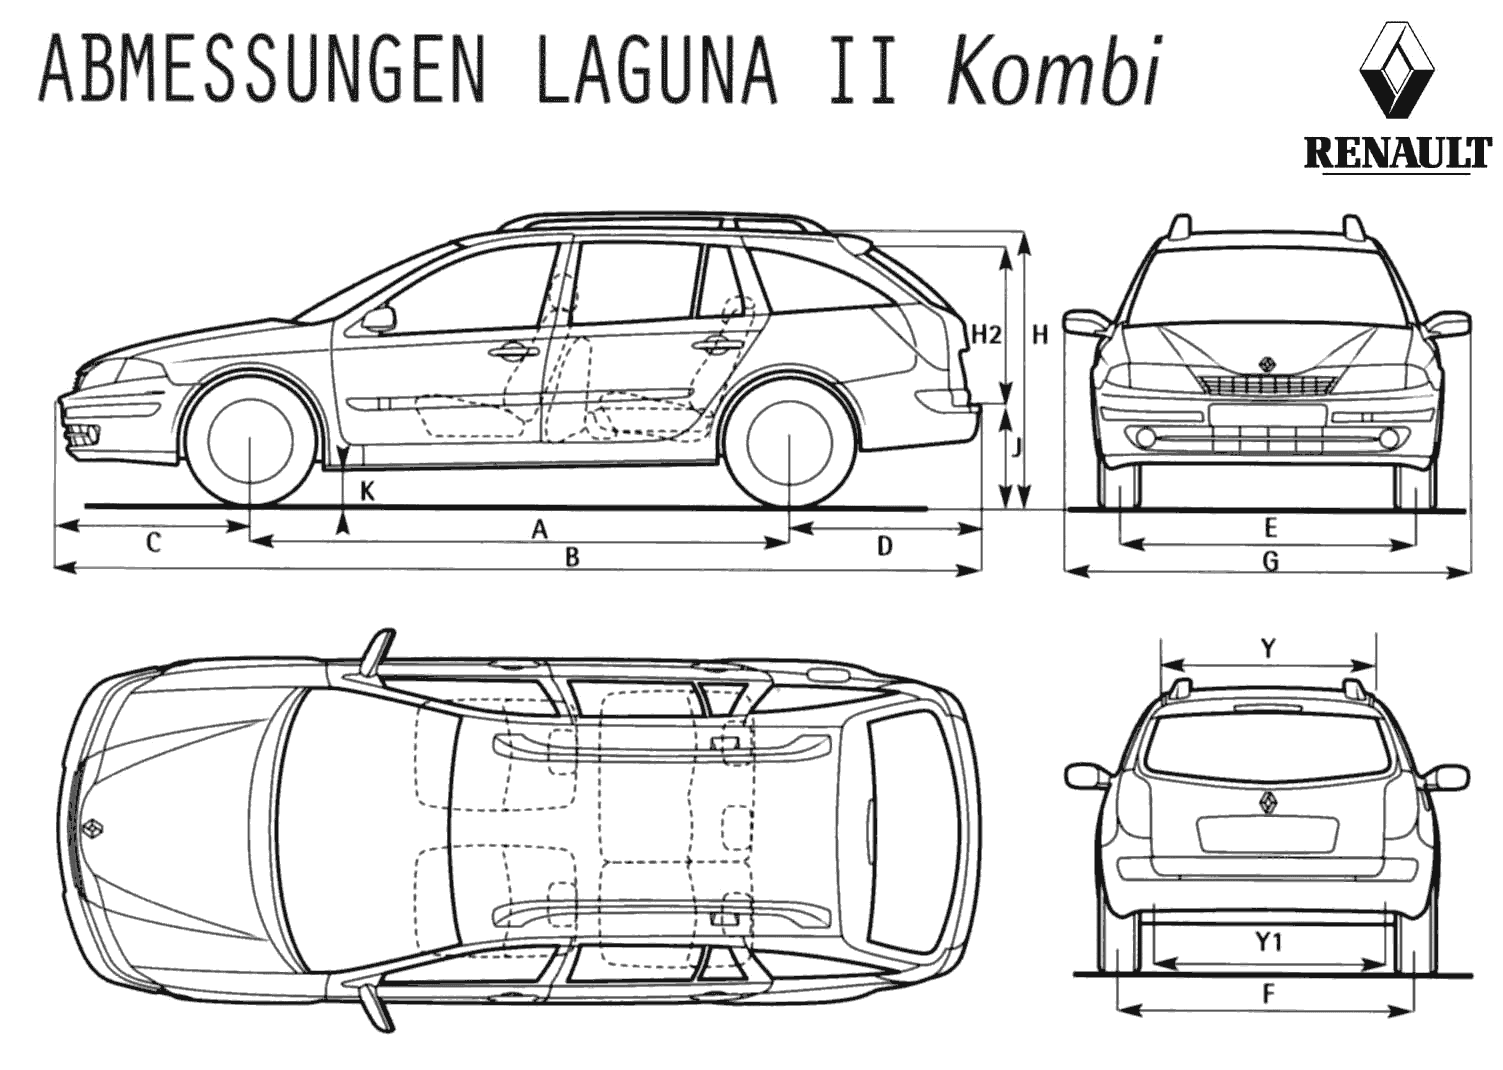 Car Renault Laguna Combi